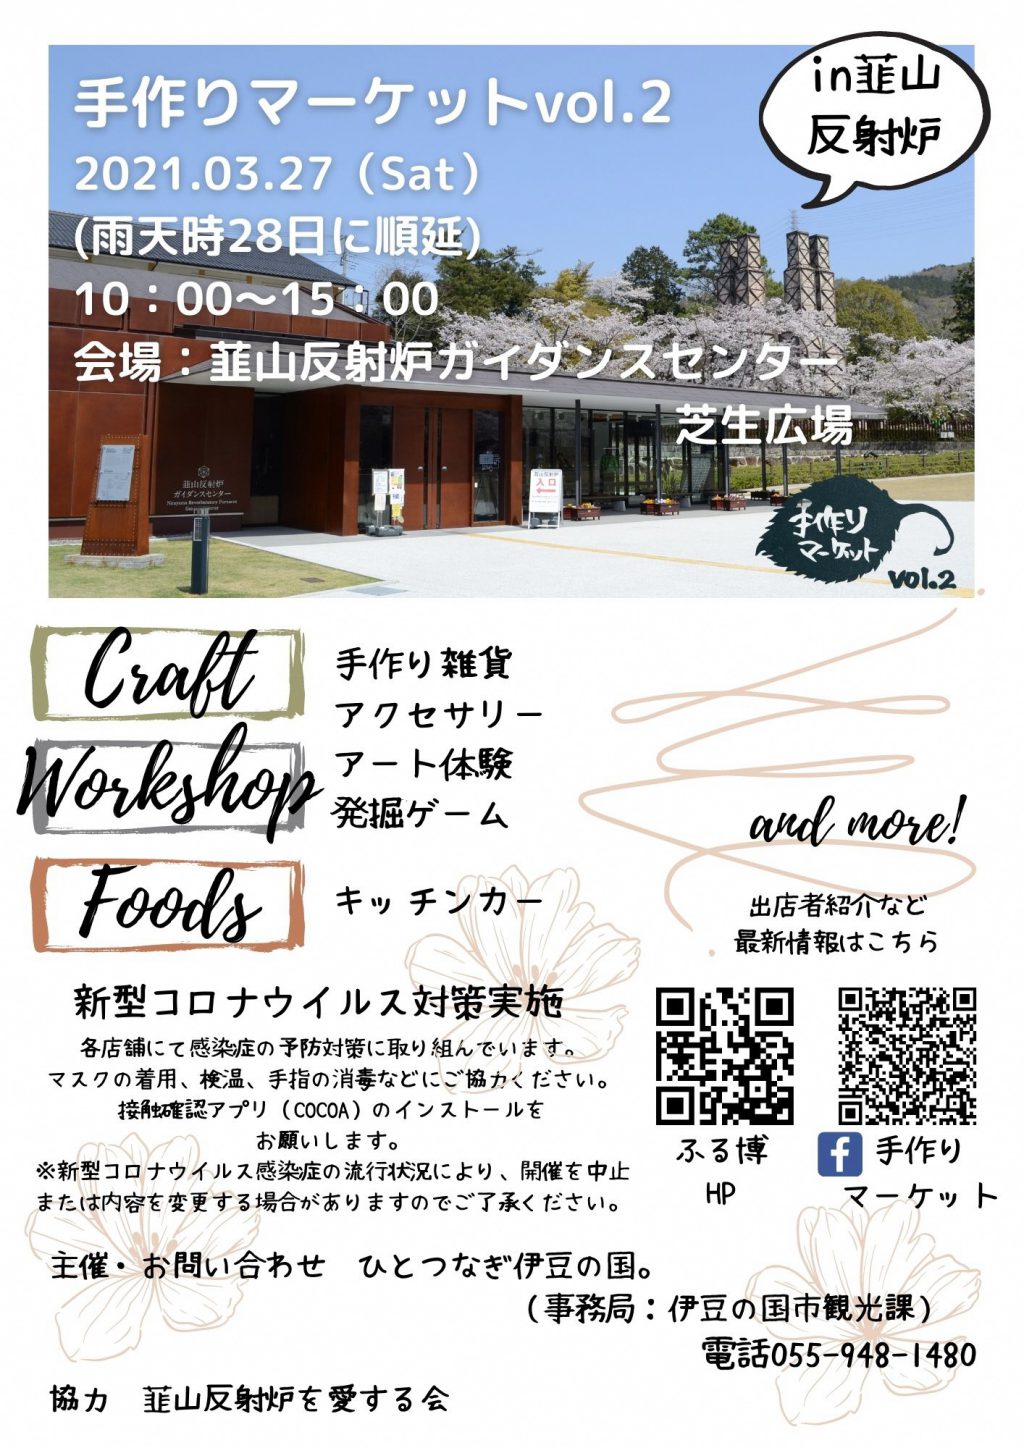 手作りマーケットvol 2 3月27日開催 伊豆の国ふるさと博覧会